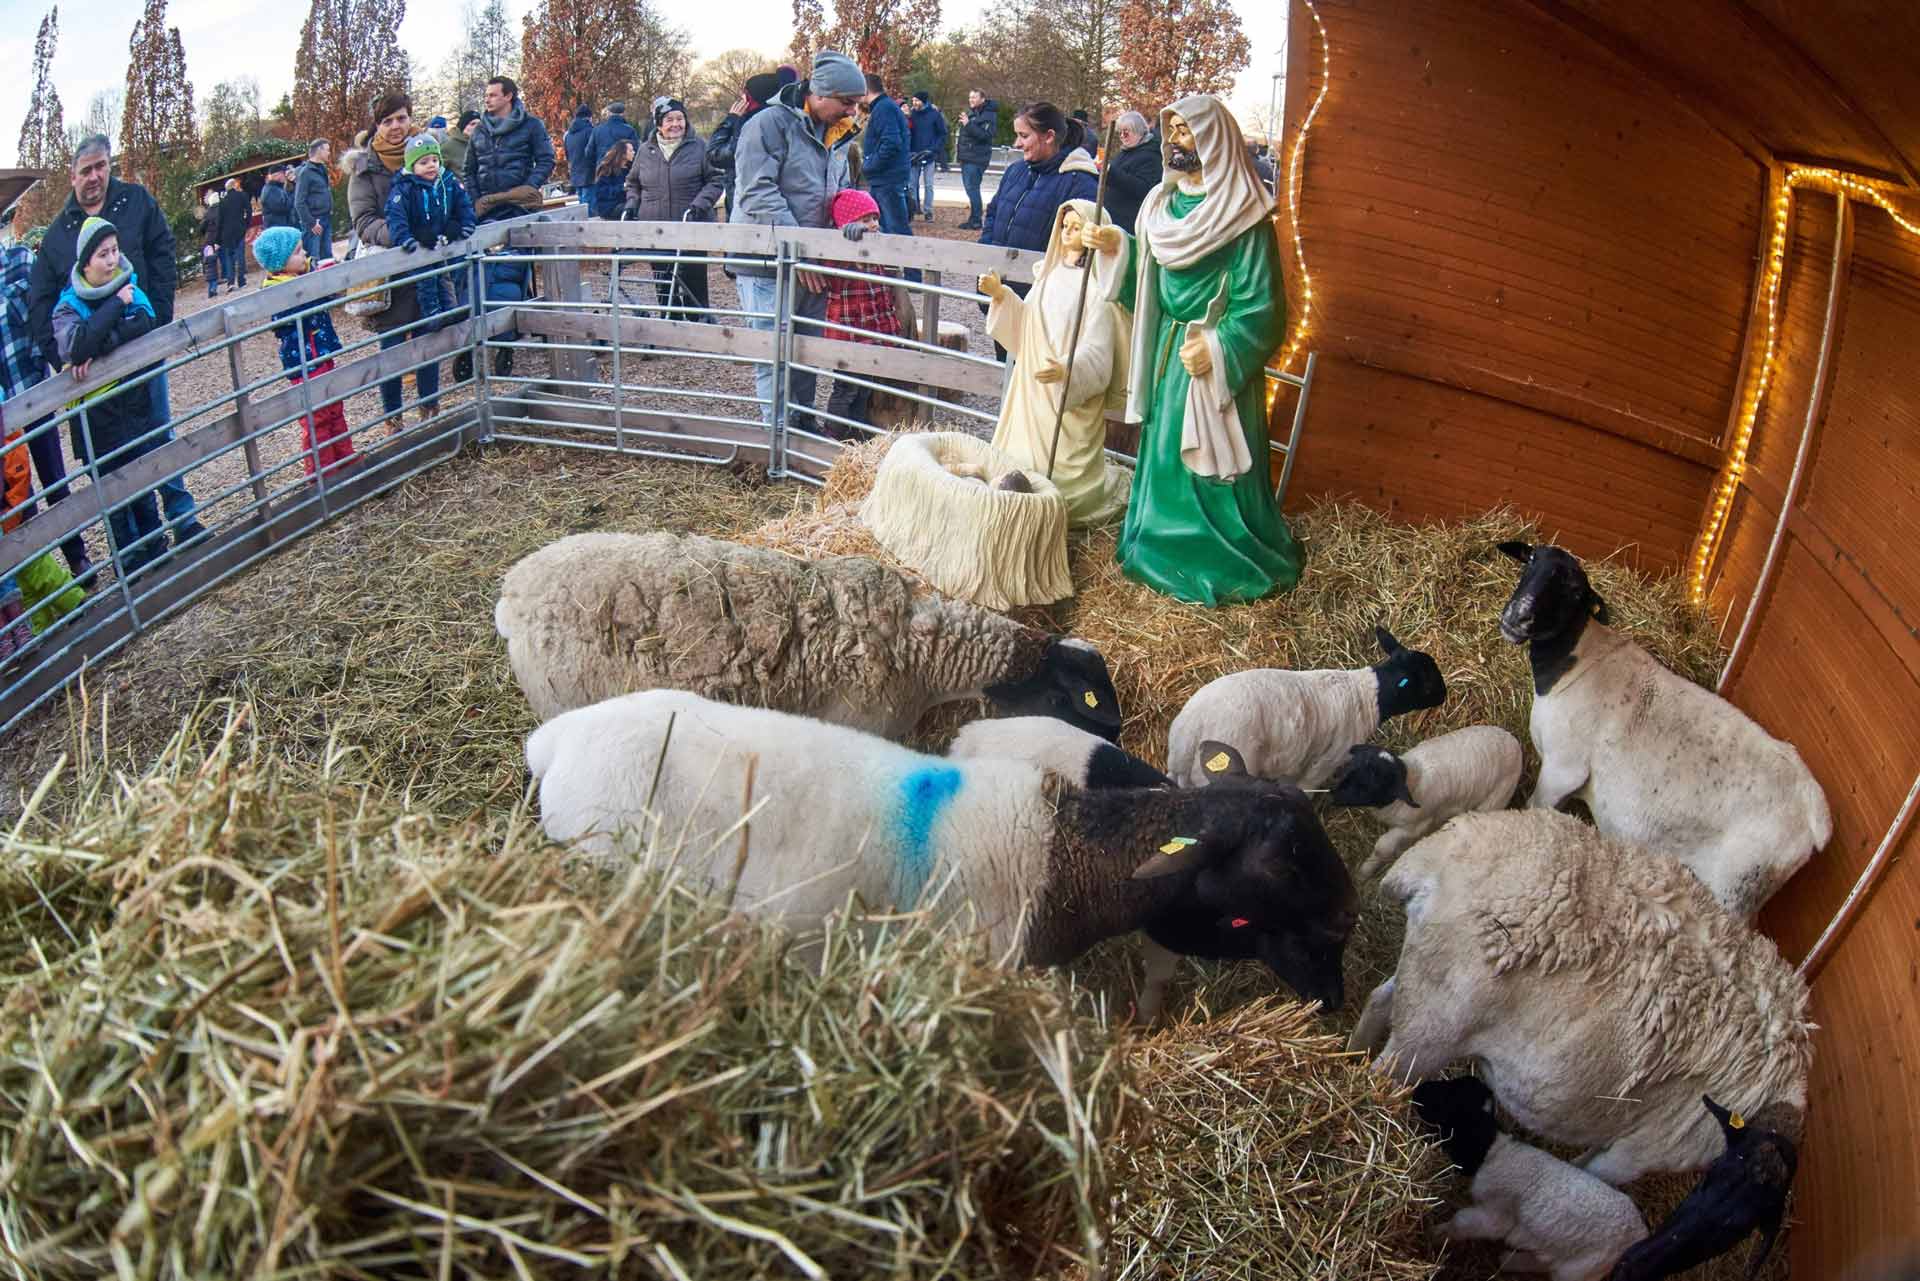 Eines von vielen Highlights für Kinder: die Krippe mit echten Schafen. (Foto: Mayer)